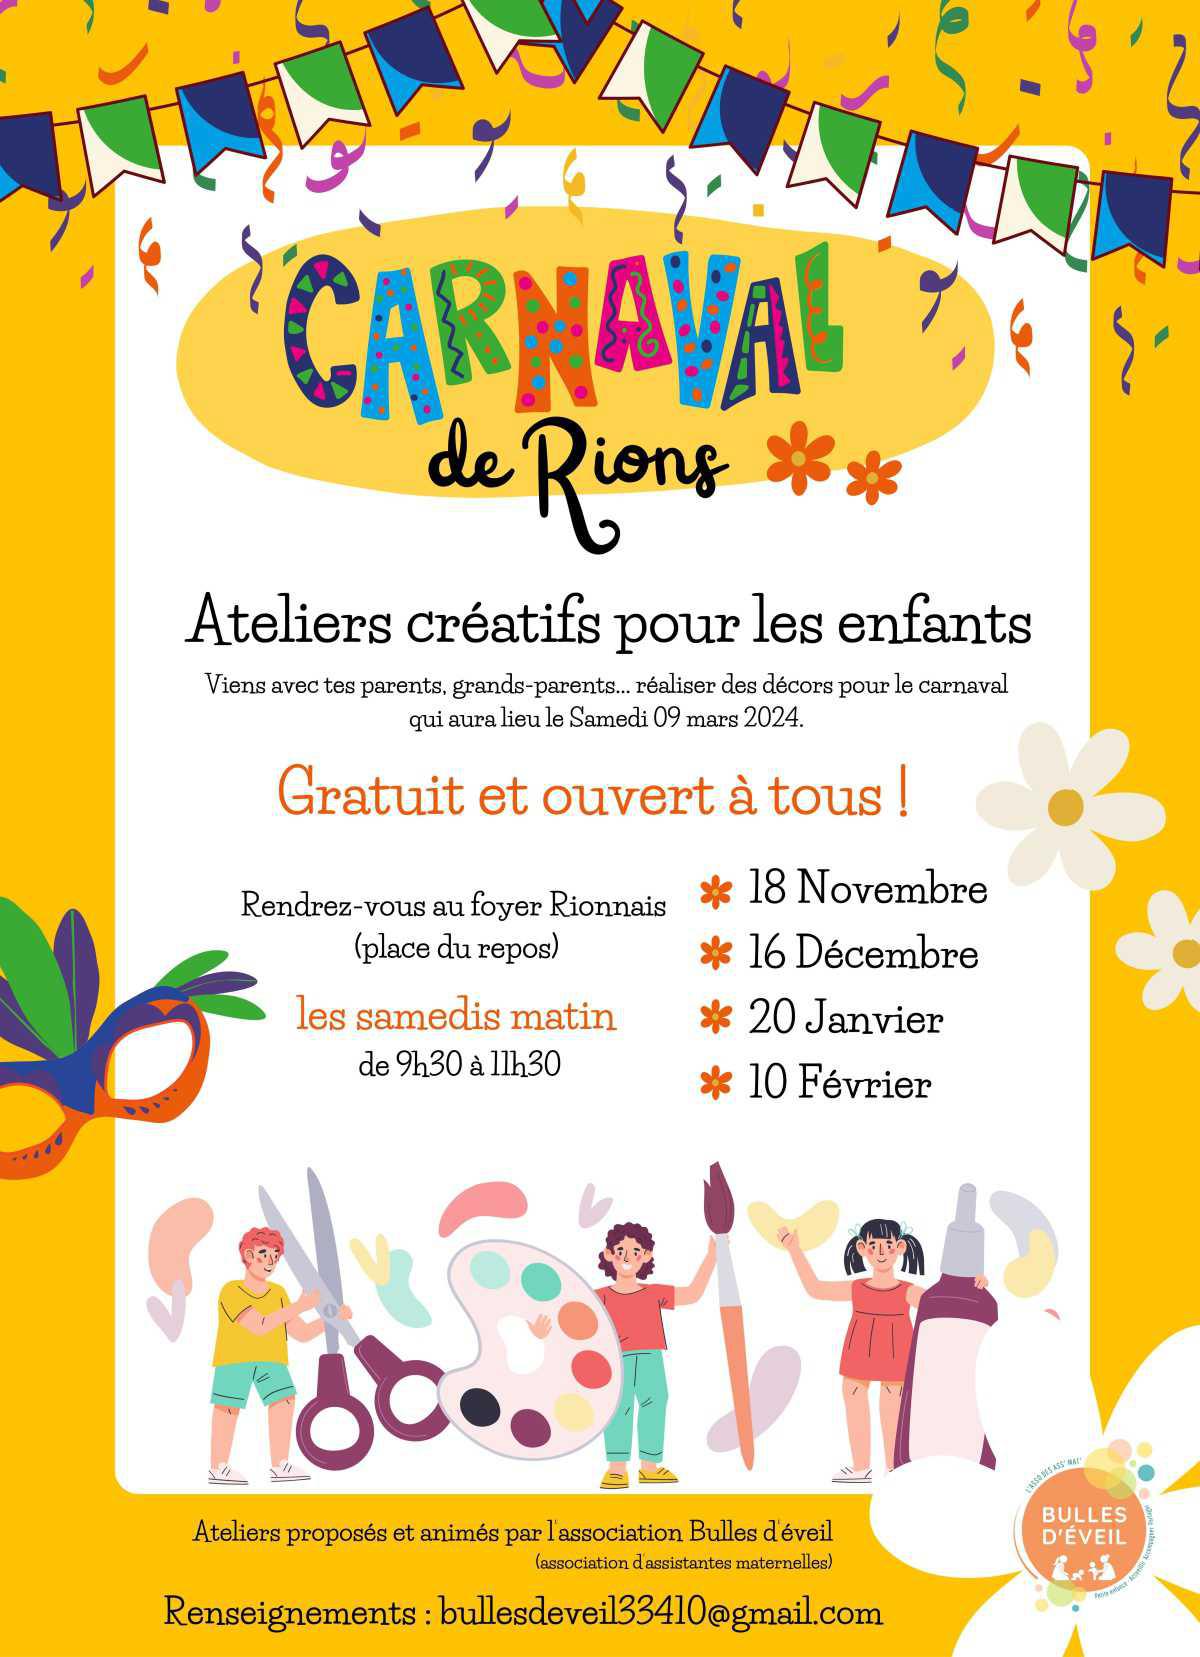 Venez préparer avec nous le carnaval de Rions, 9 mars 2024 !